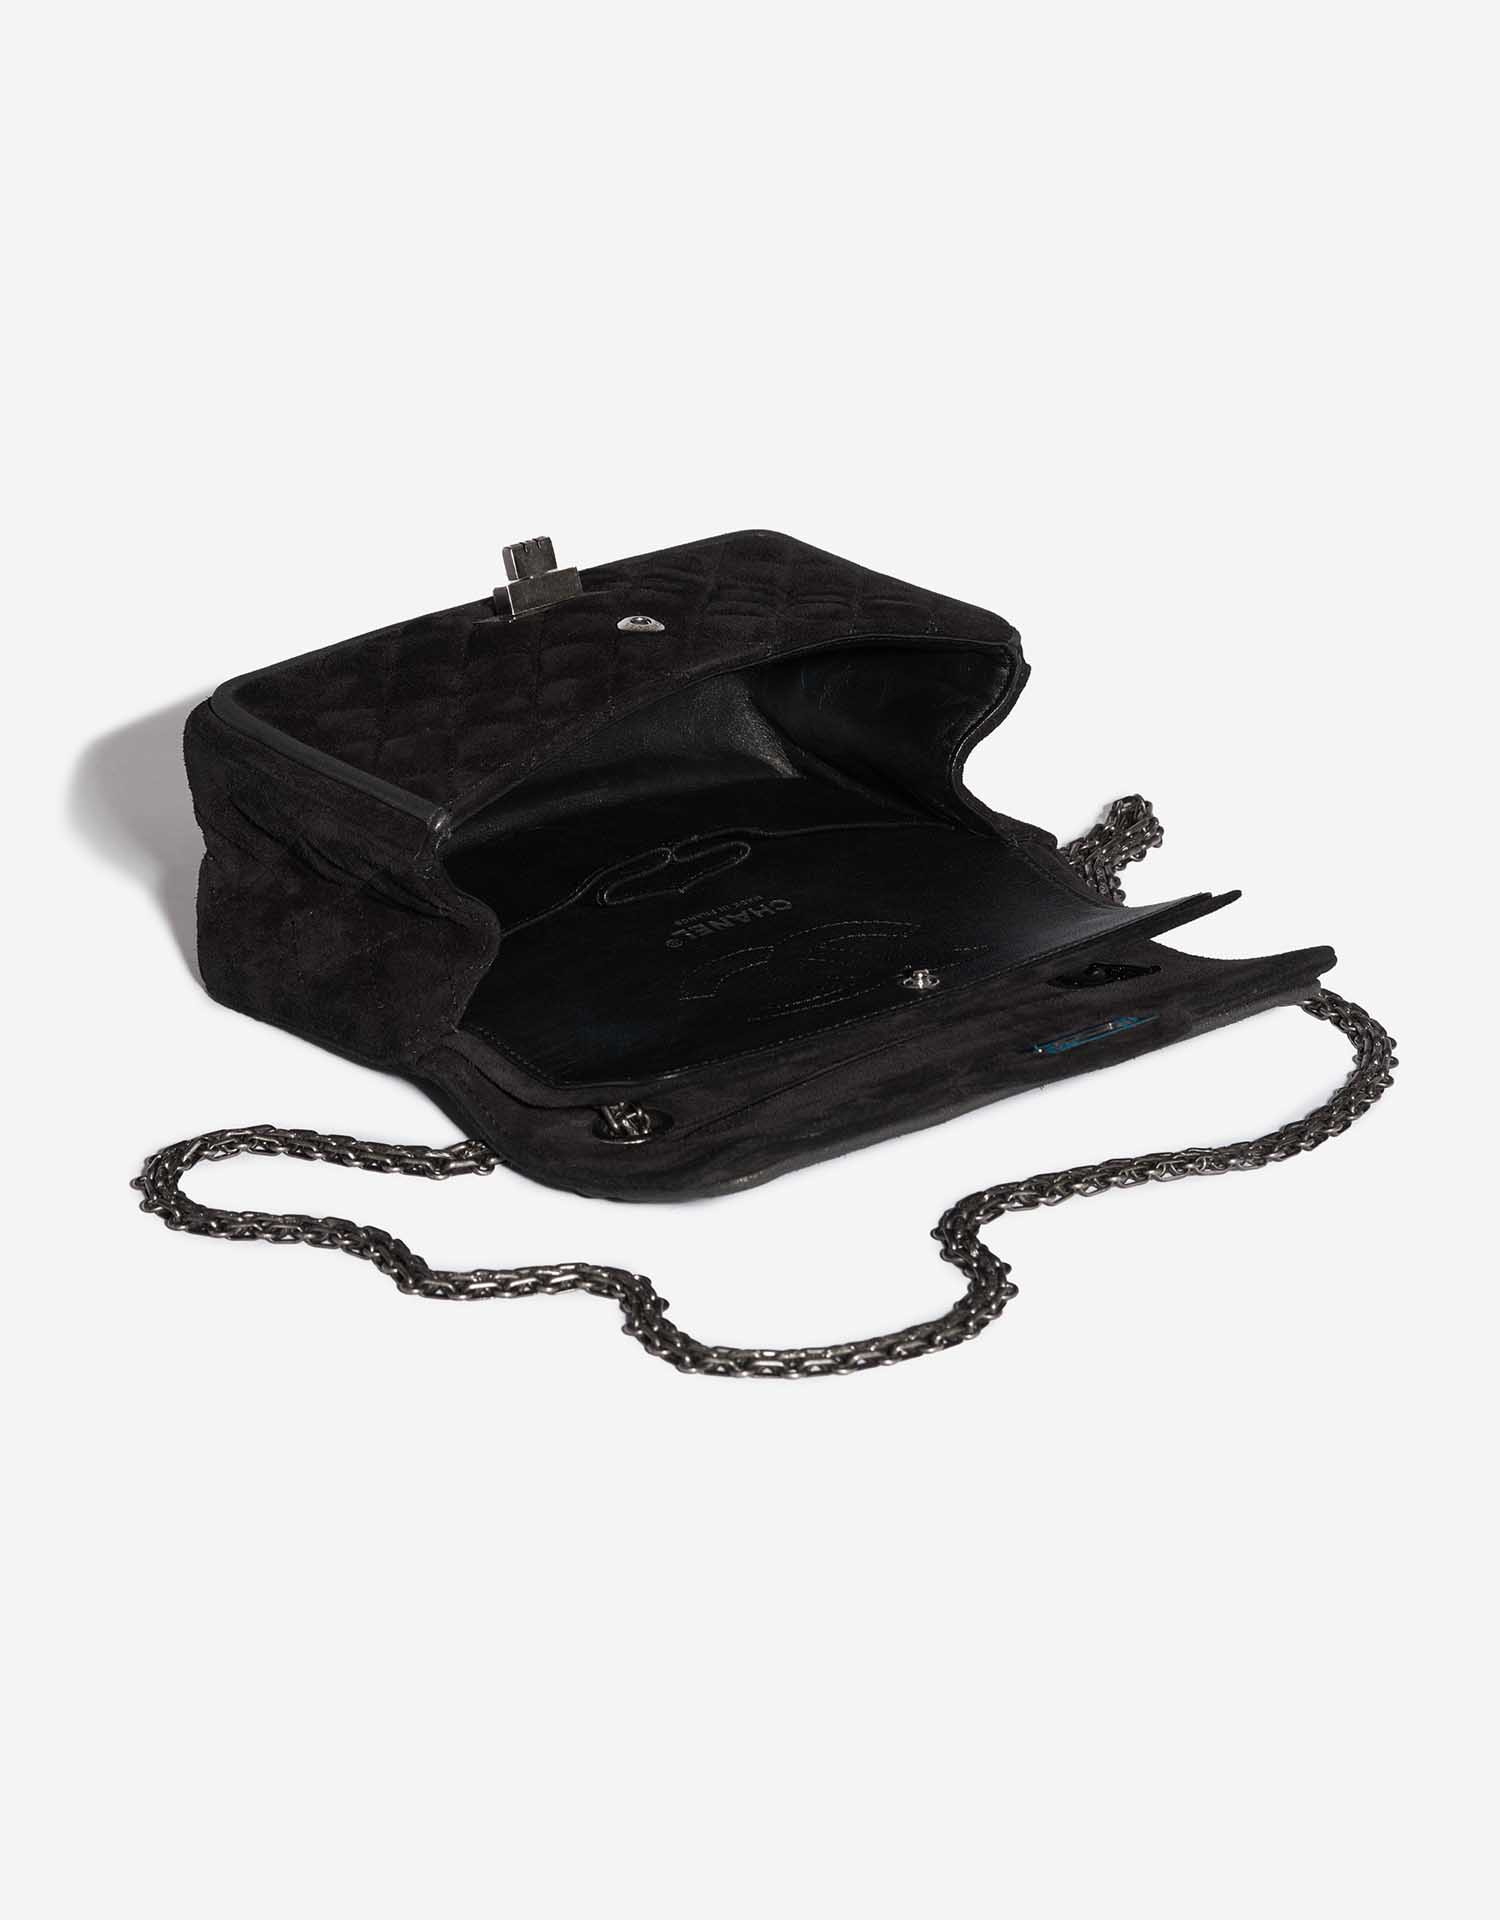 Sac Chanel 2.55 Reissue Velvet Noir Noir Intérieur | Vendez votre sac de créateur sur Saclab.com